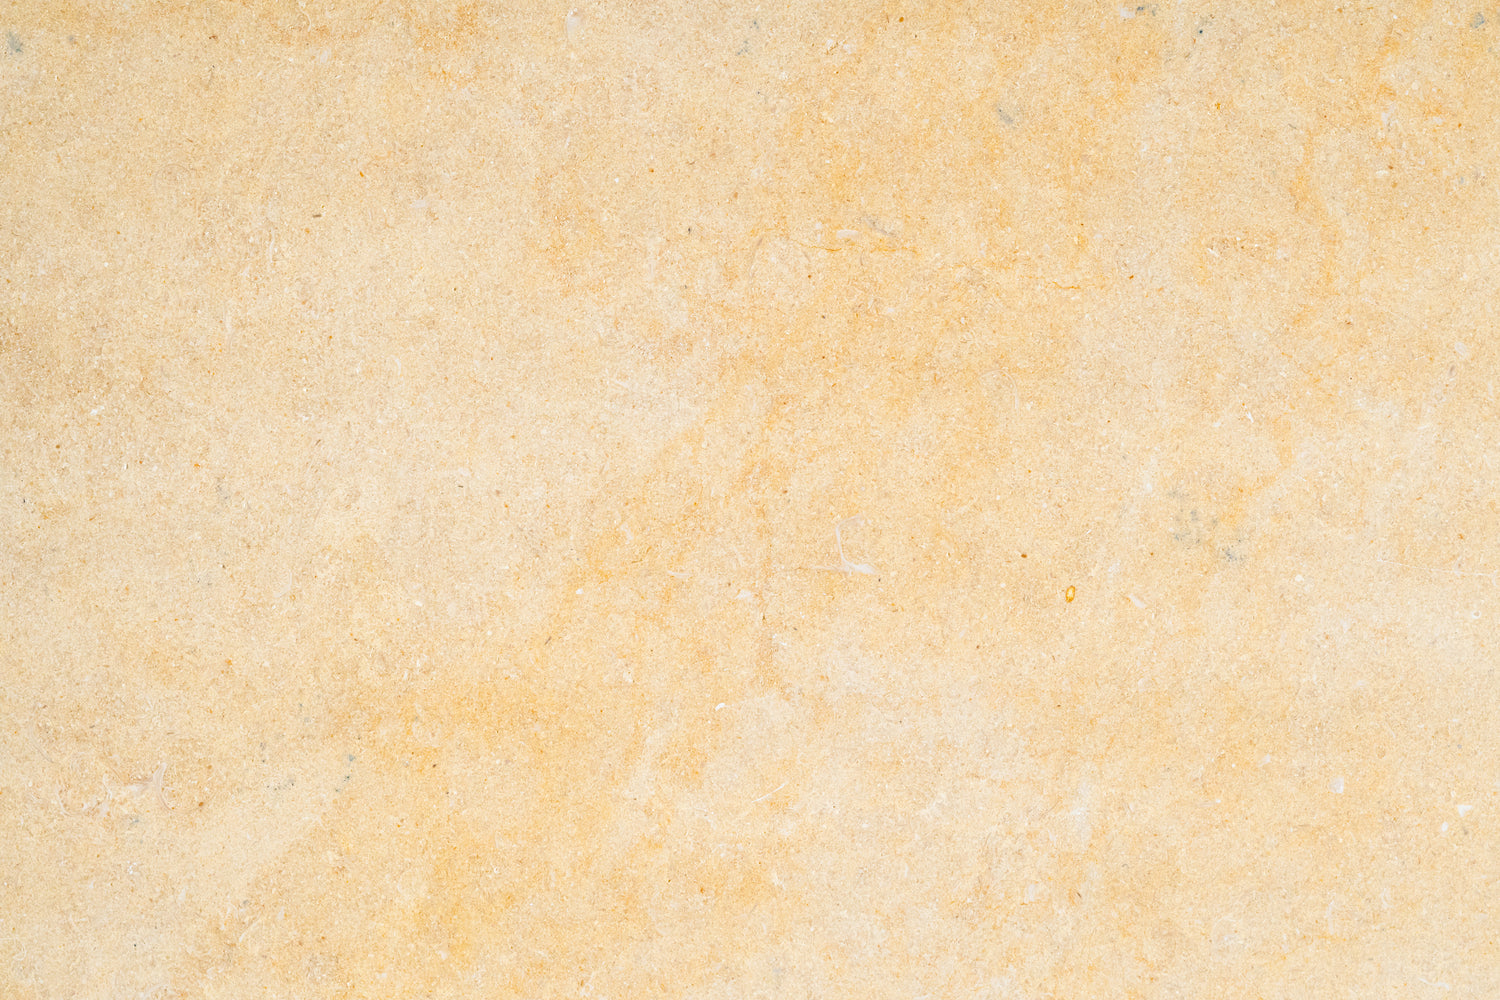 Full Tile Sample - Antique Gold Limestone Tile - 12" x 12" x 3/8" Honed